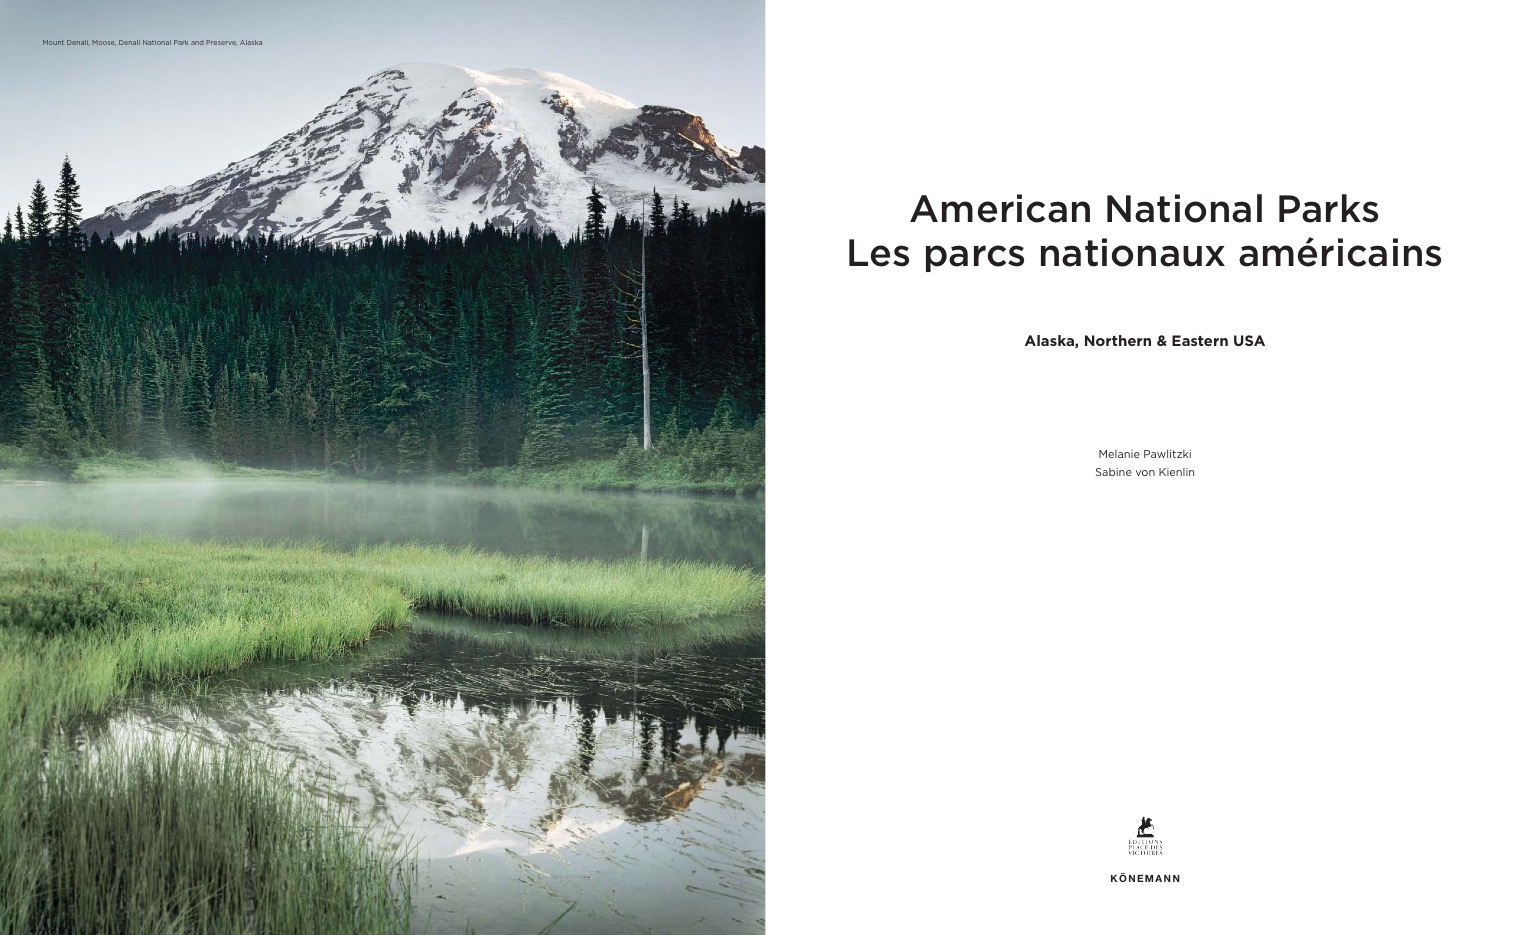 American National Parks - Alaska, Northern & Eastern USA